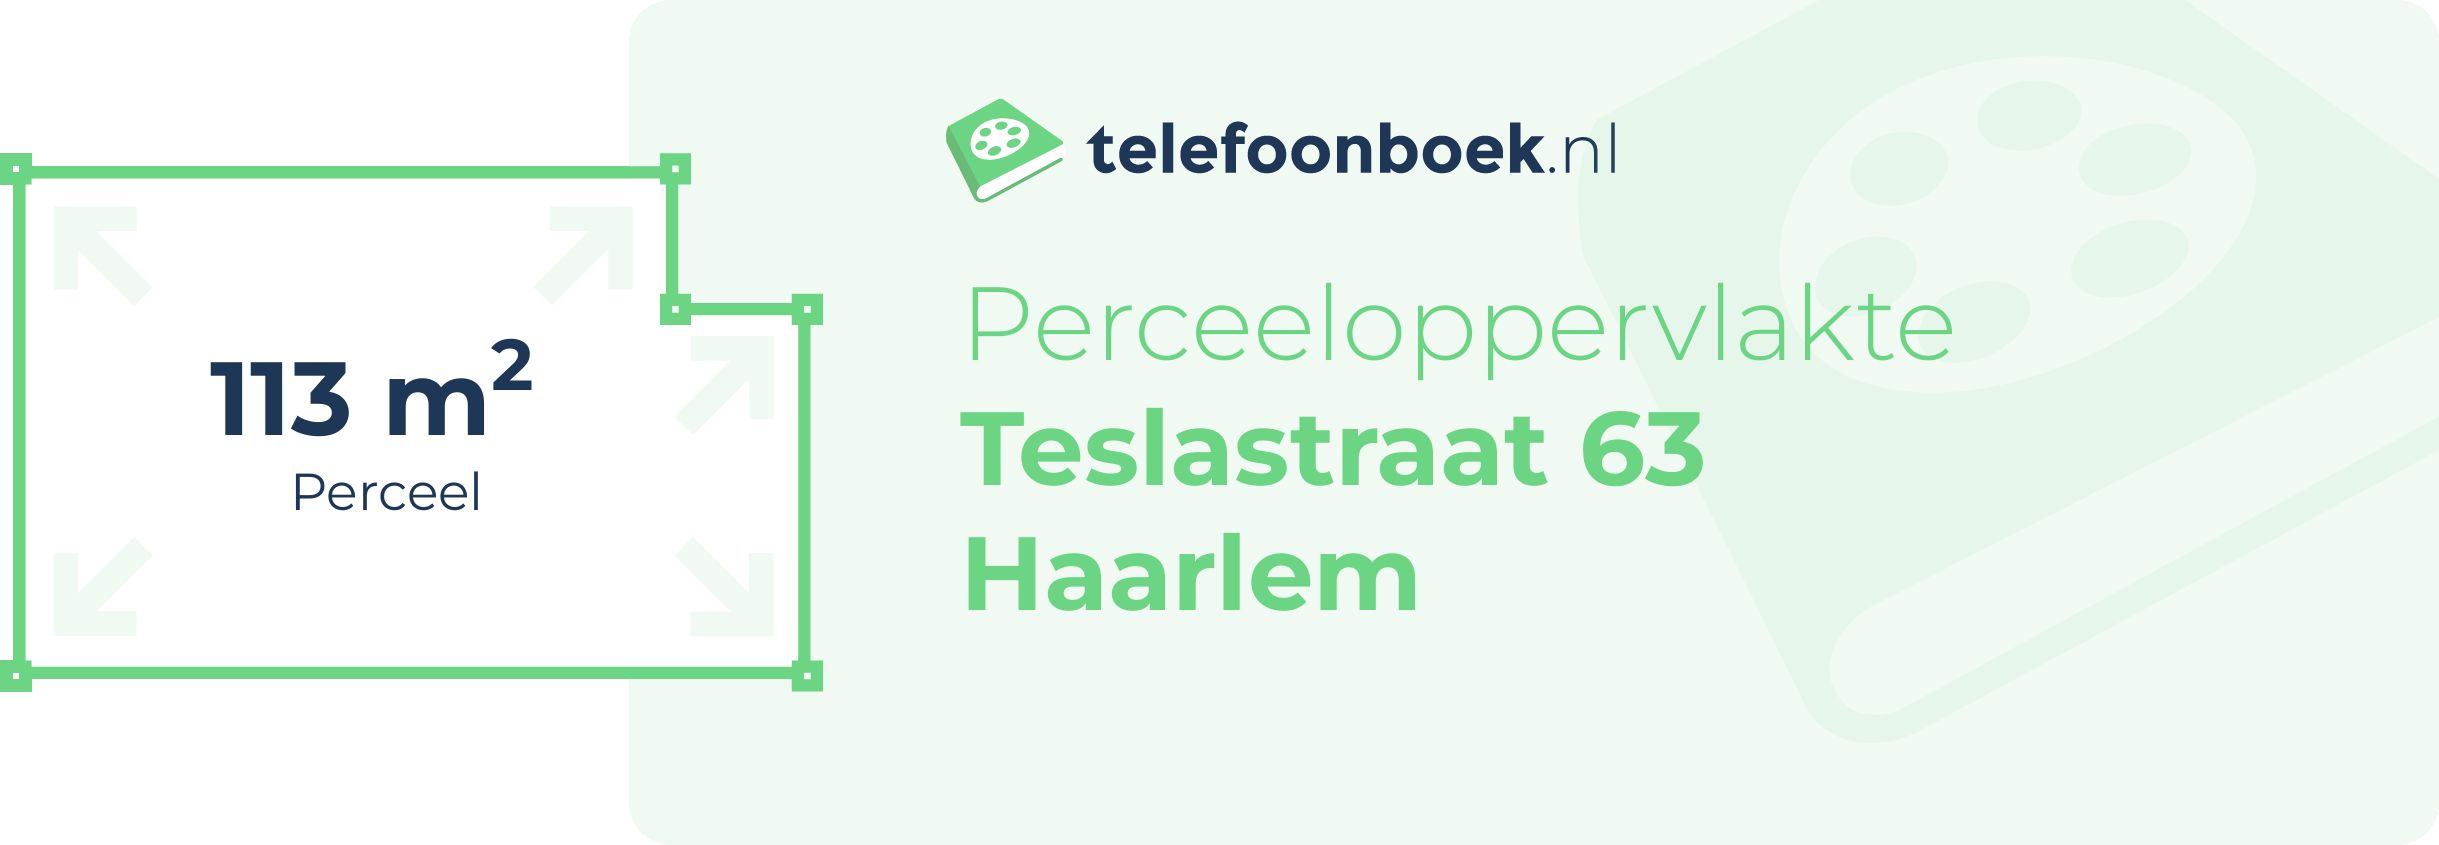 Perceeloppervlakte Teslastraat 63 Haarlem